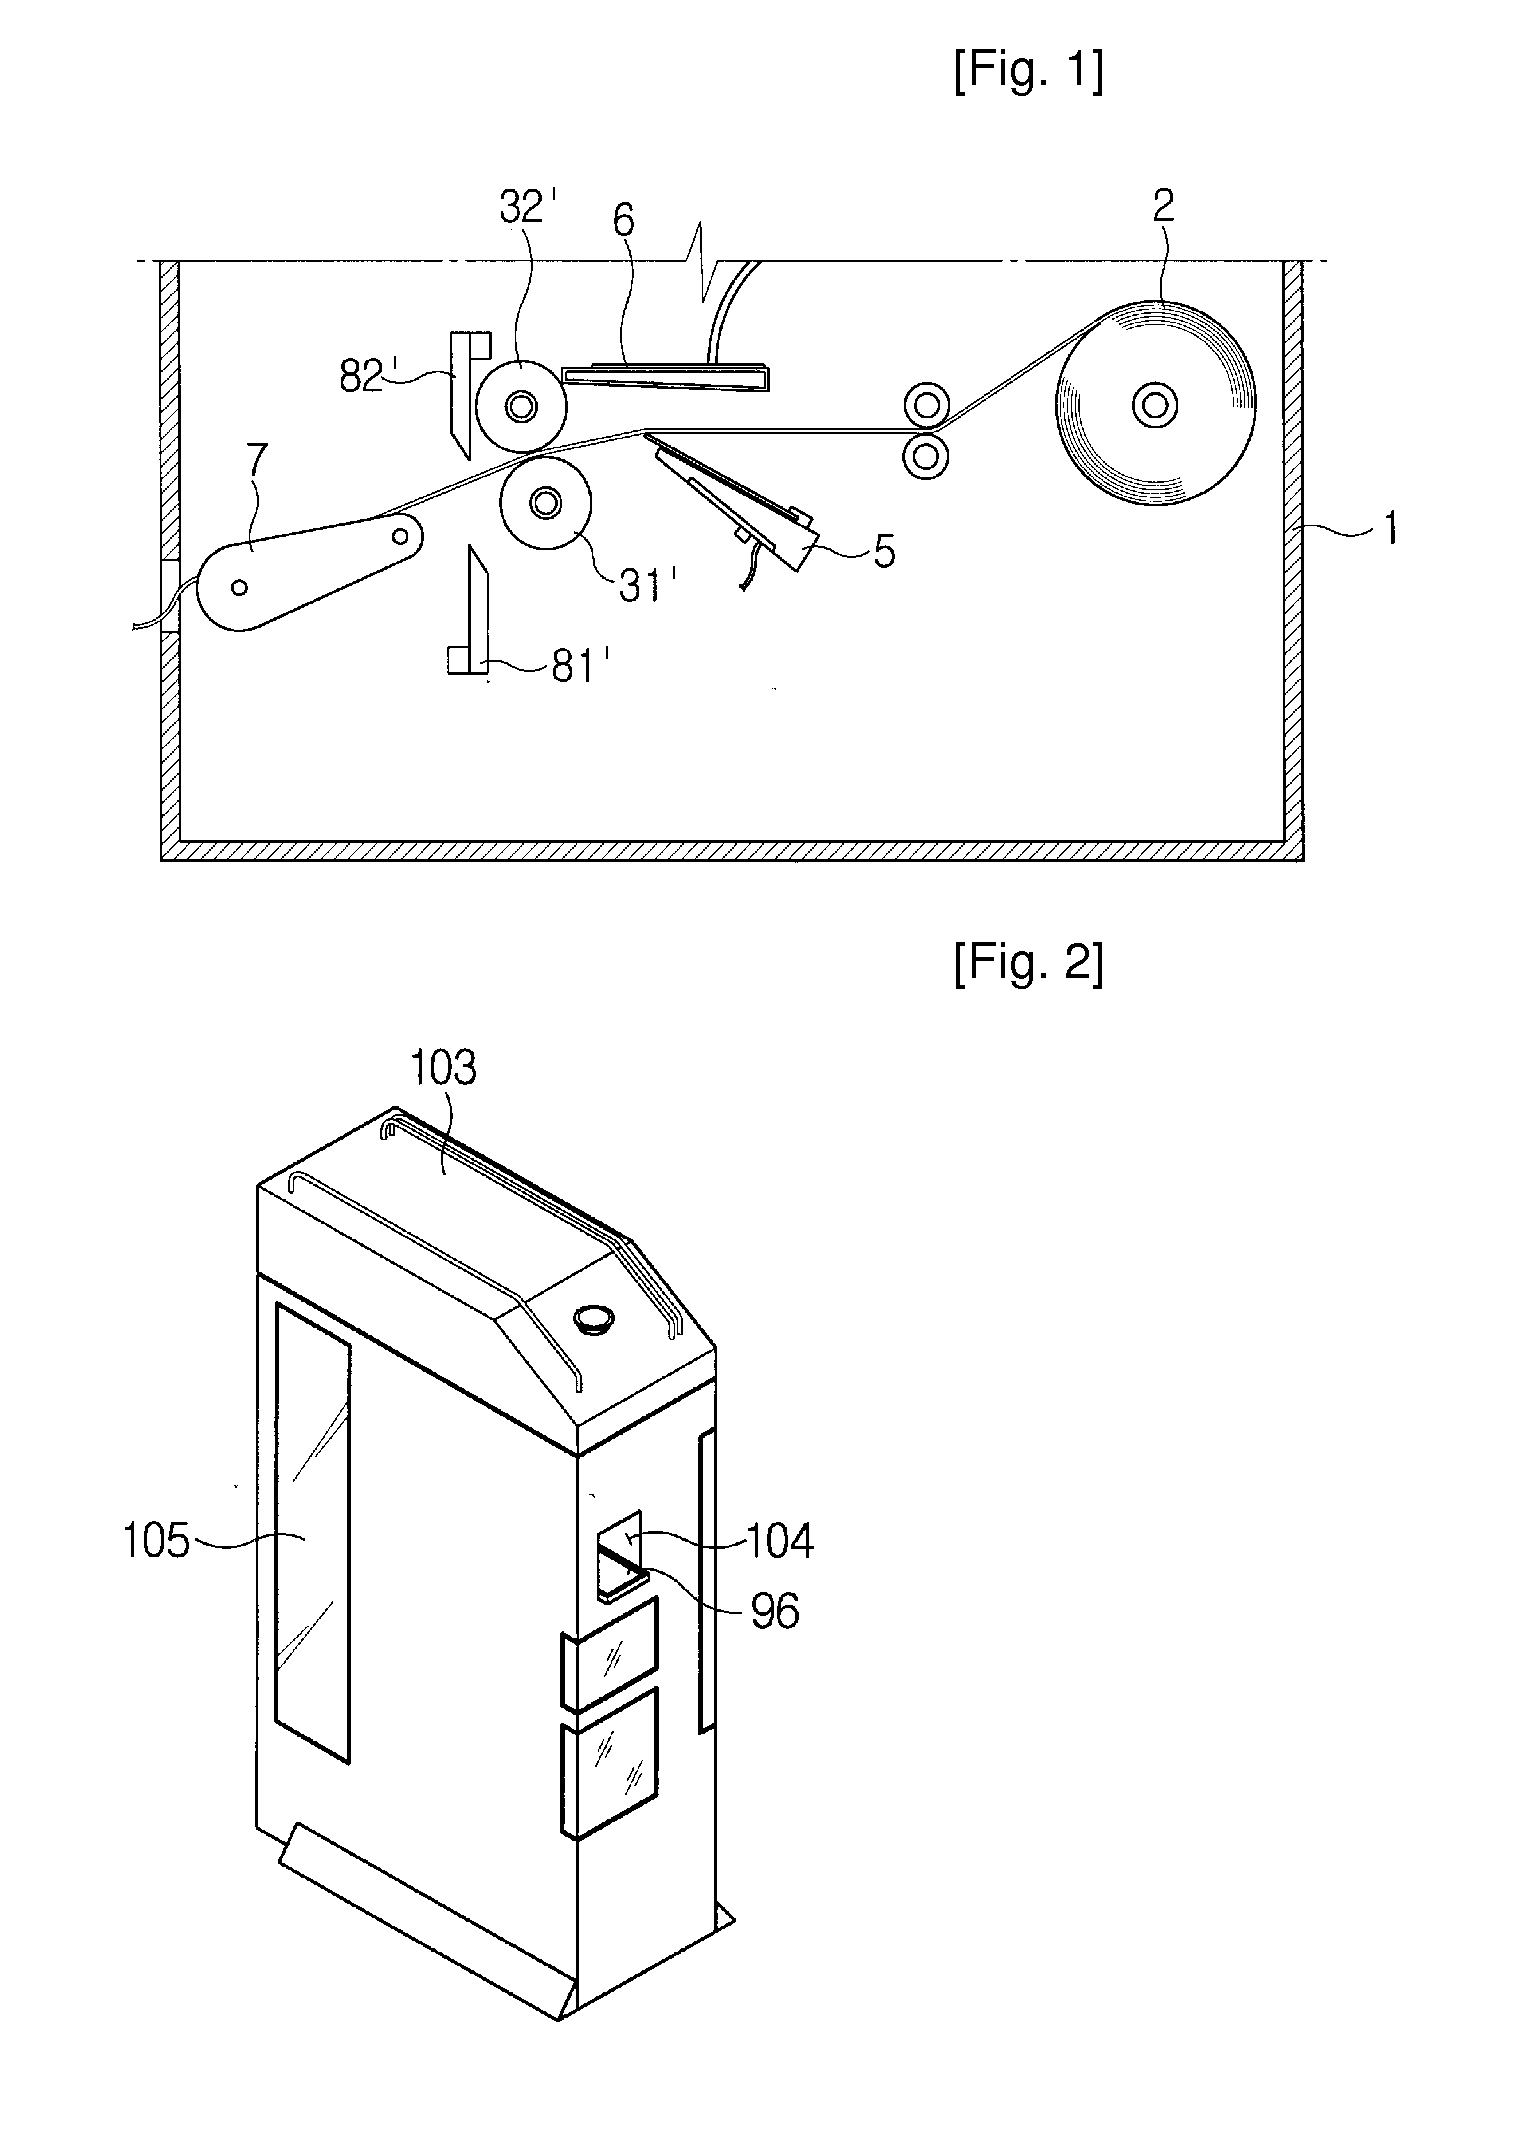 Apparatus for Discharging Tissue